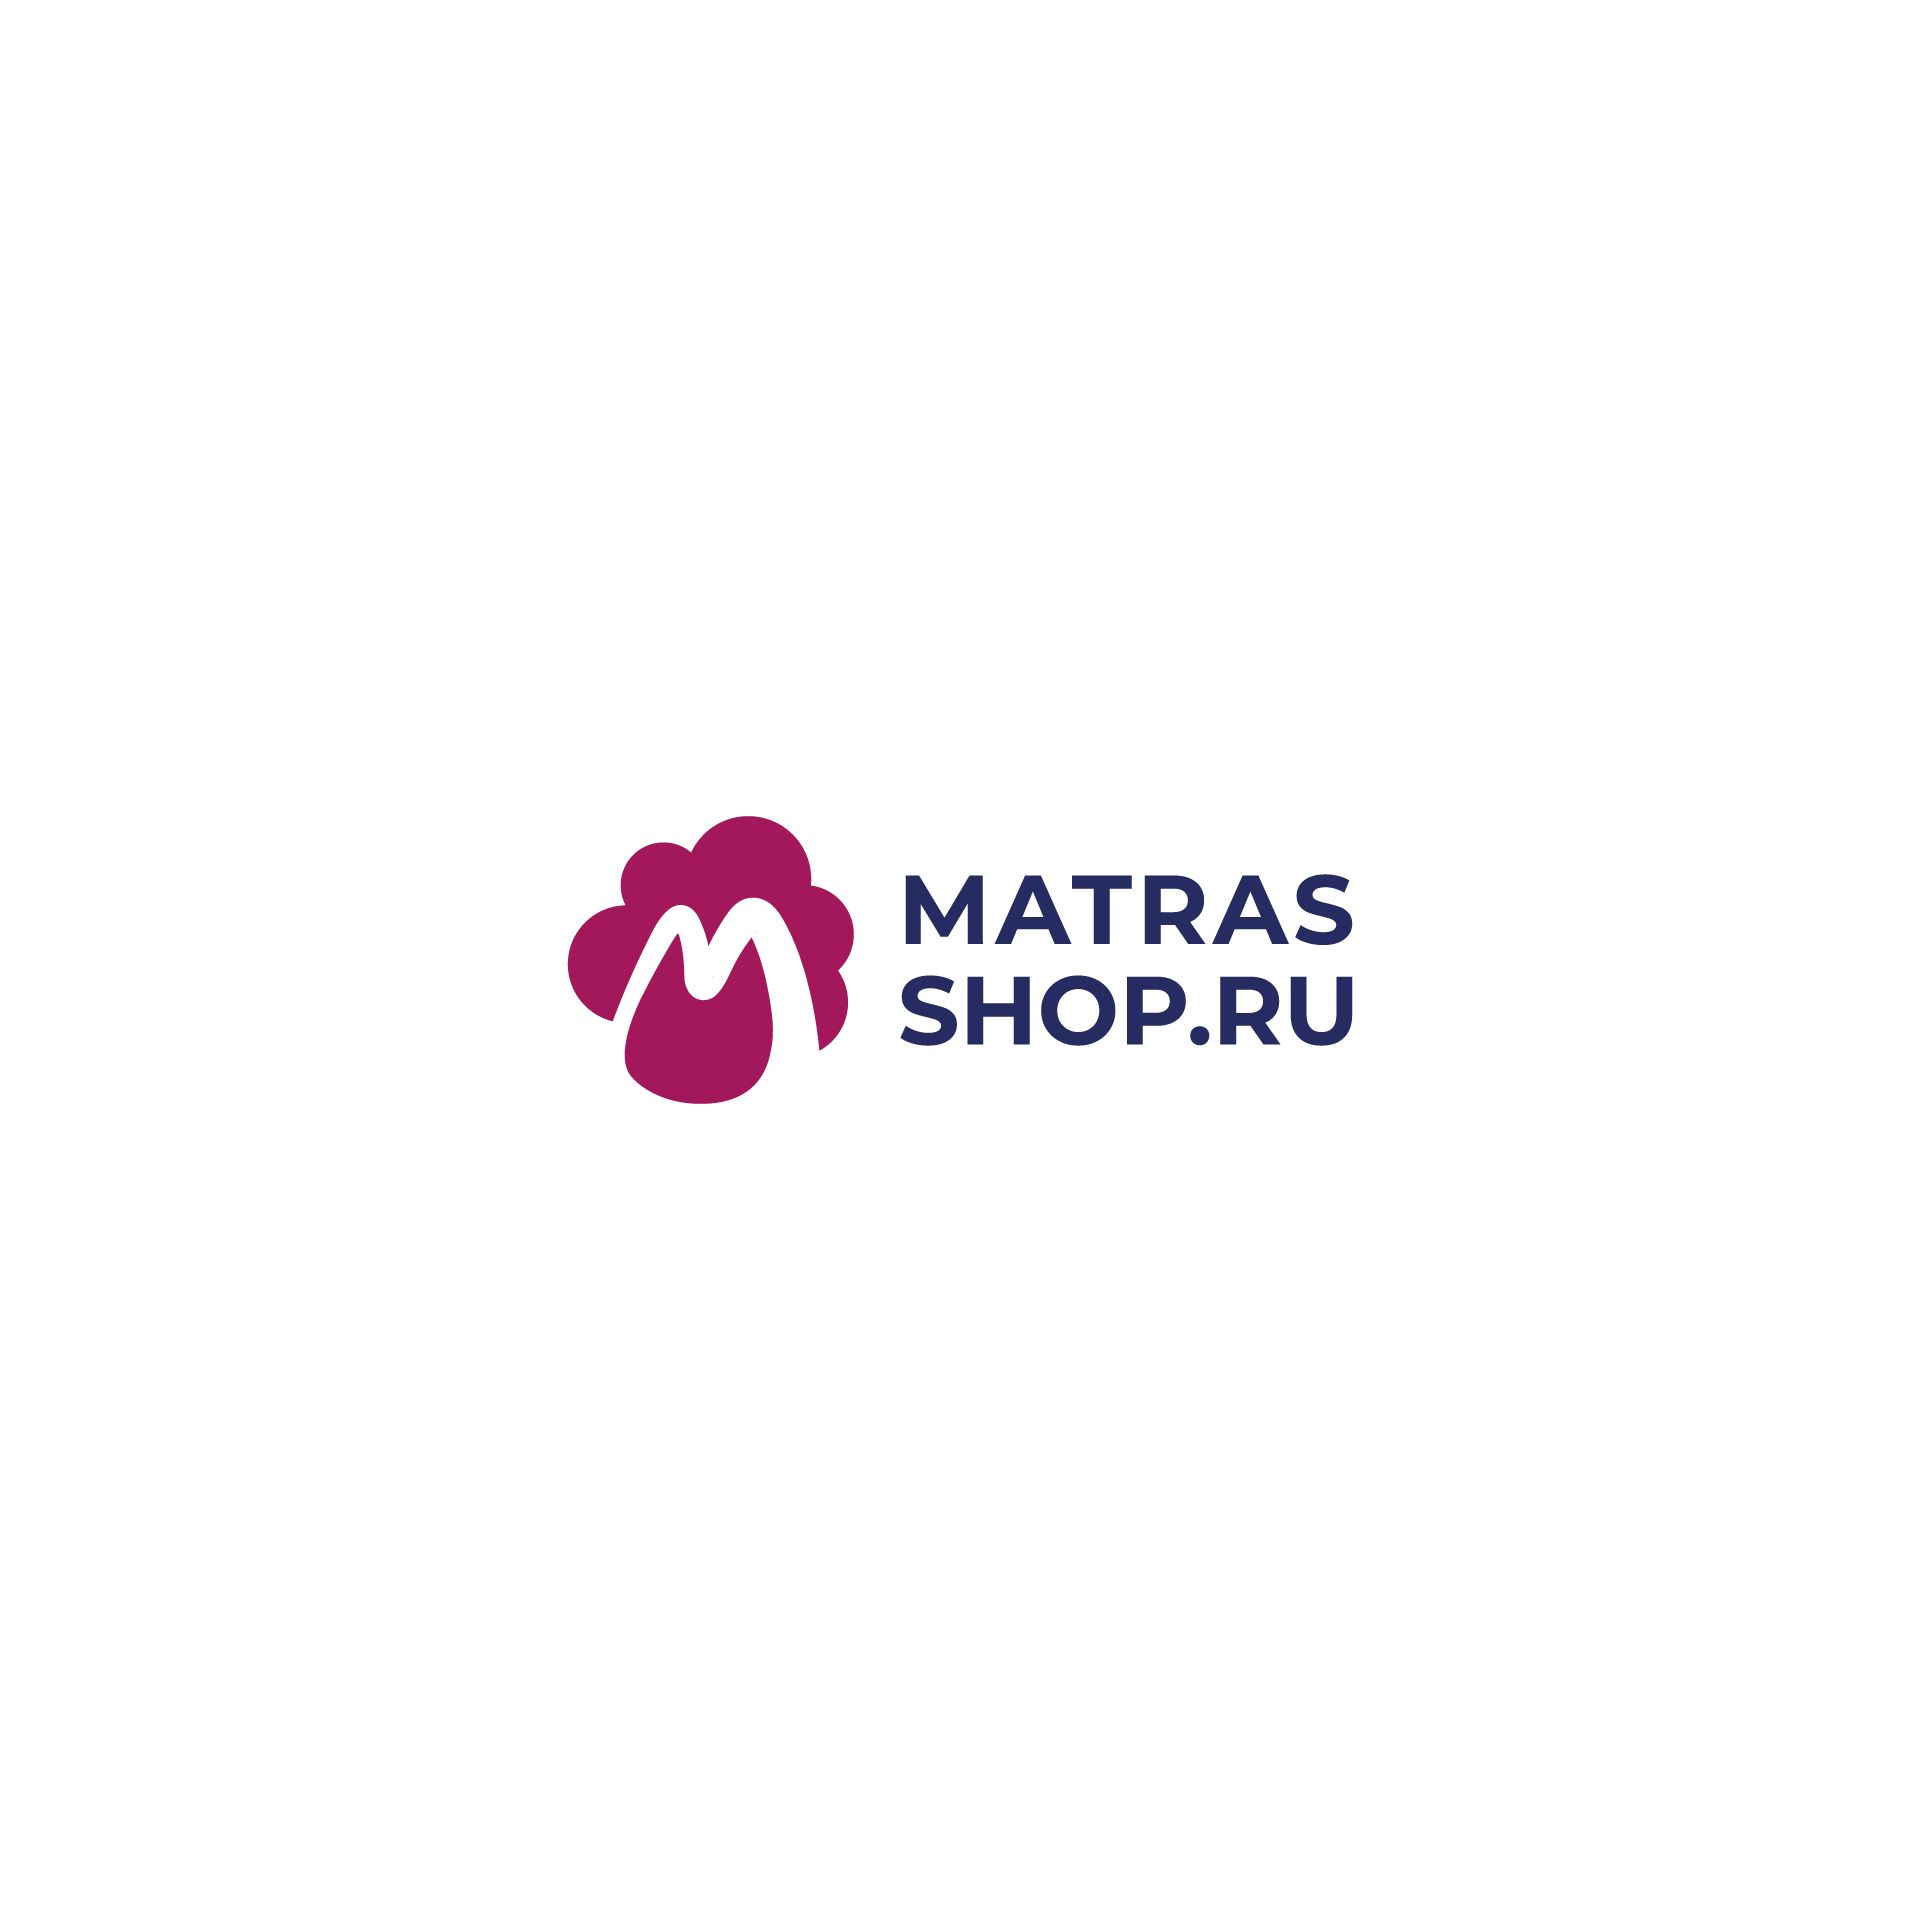 Логотип для Логотип для сети магазинов MATRASSHOP.RU - дизайнер alpine-gold